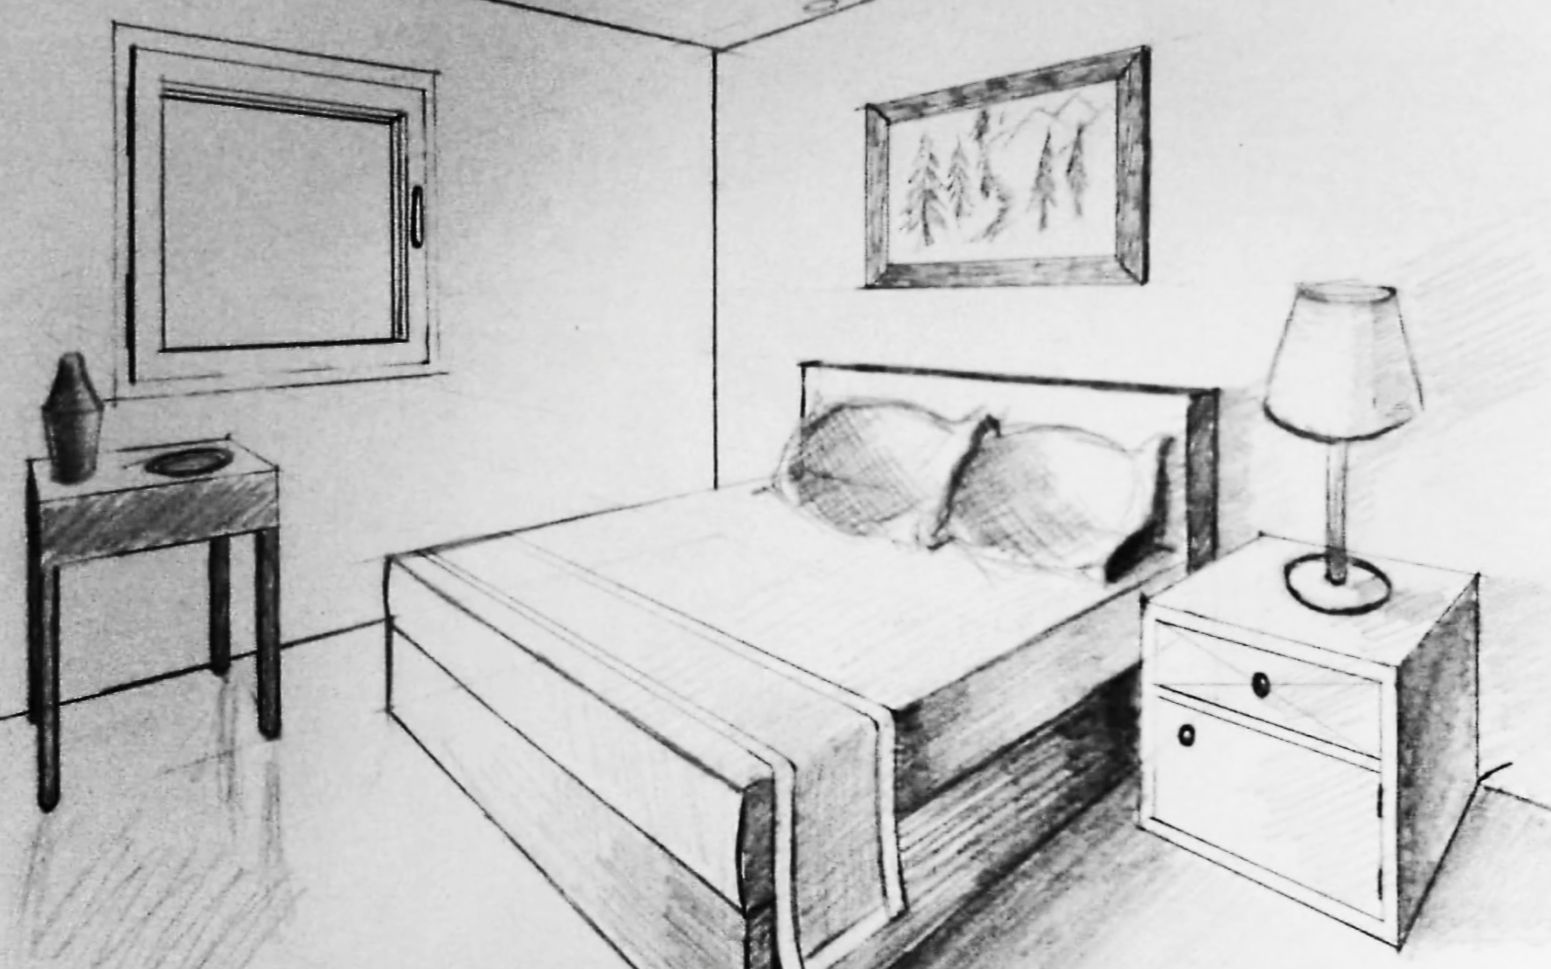 手绘一点透视卧室方案设计 彩色铅笔画的手绘作品欣赏 - 手绘设计教程 - 中国装饰网 装修网 家居装饰装修